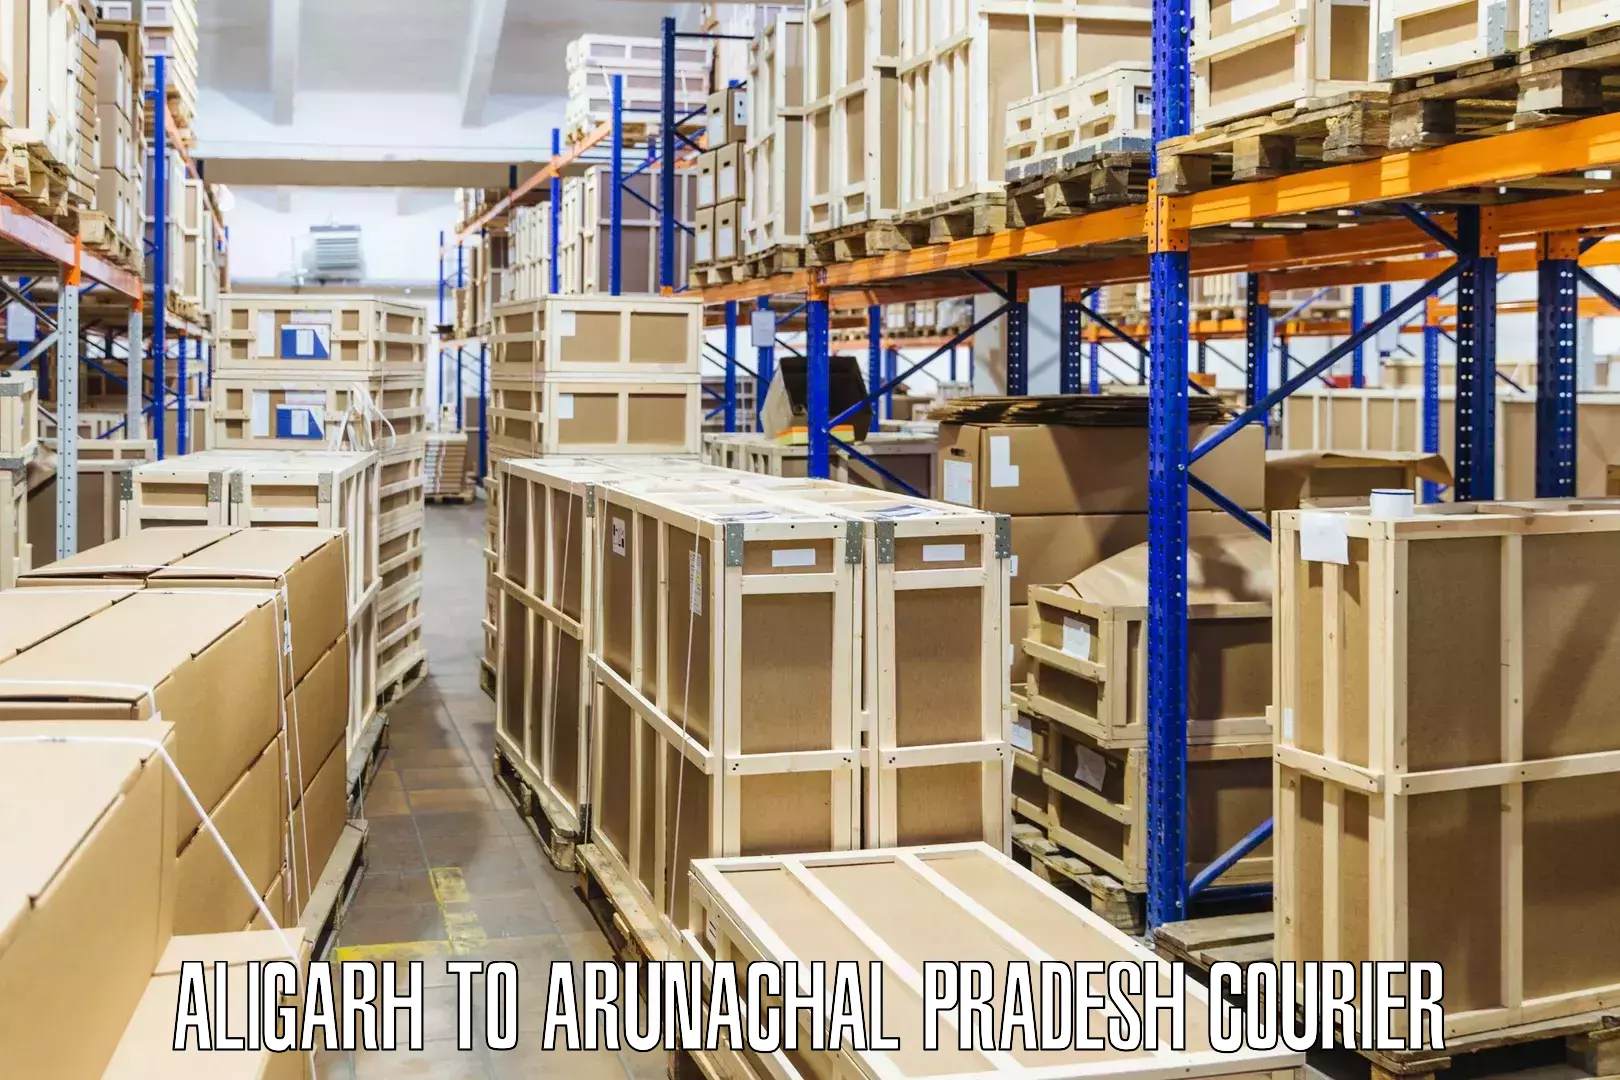 Round-the-clock parcel delivery Aligarh to Arunachal Pradesh